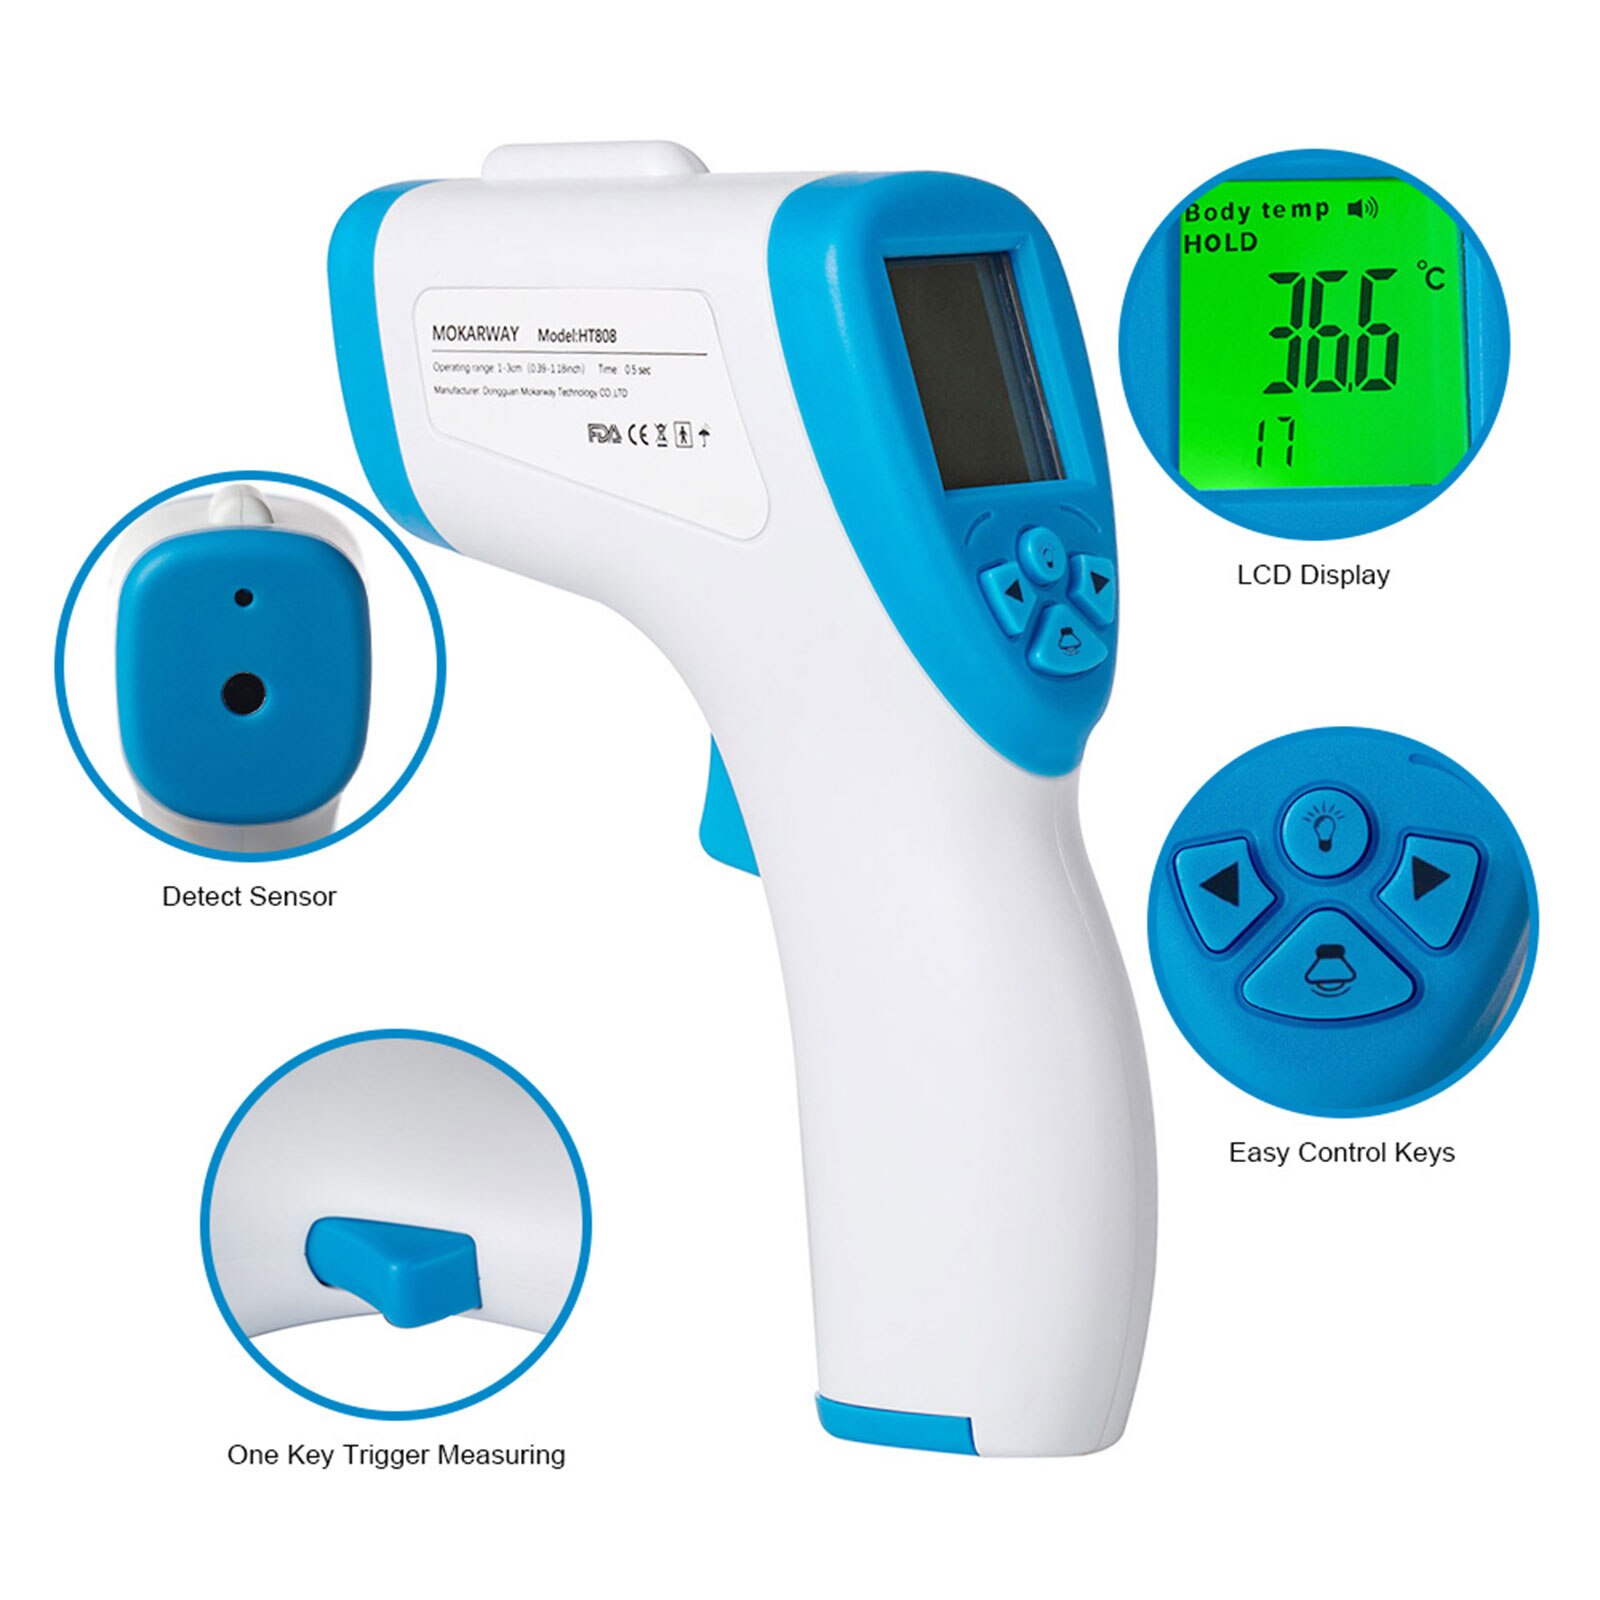 Não-contato infravermelho testa termômetro termômetro digital 3-color lcd backilt display temperatura corporal febre alarme